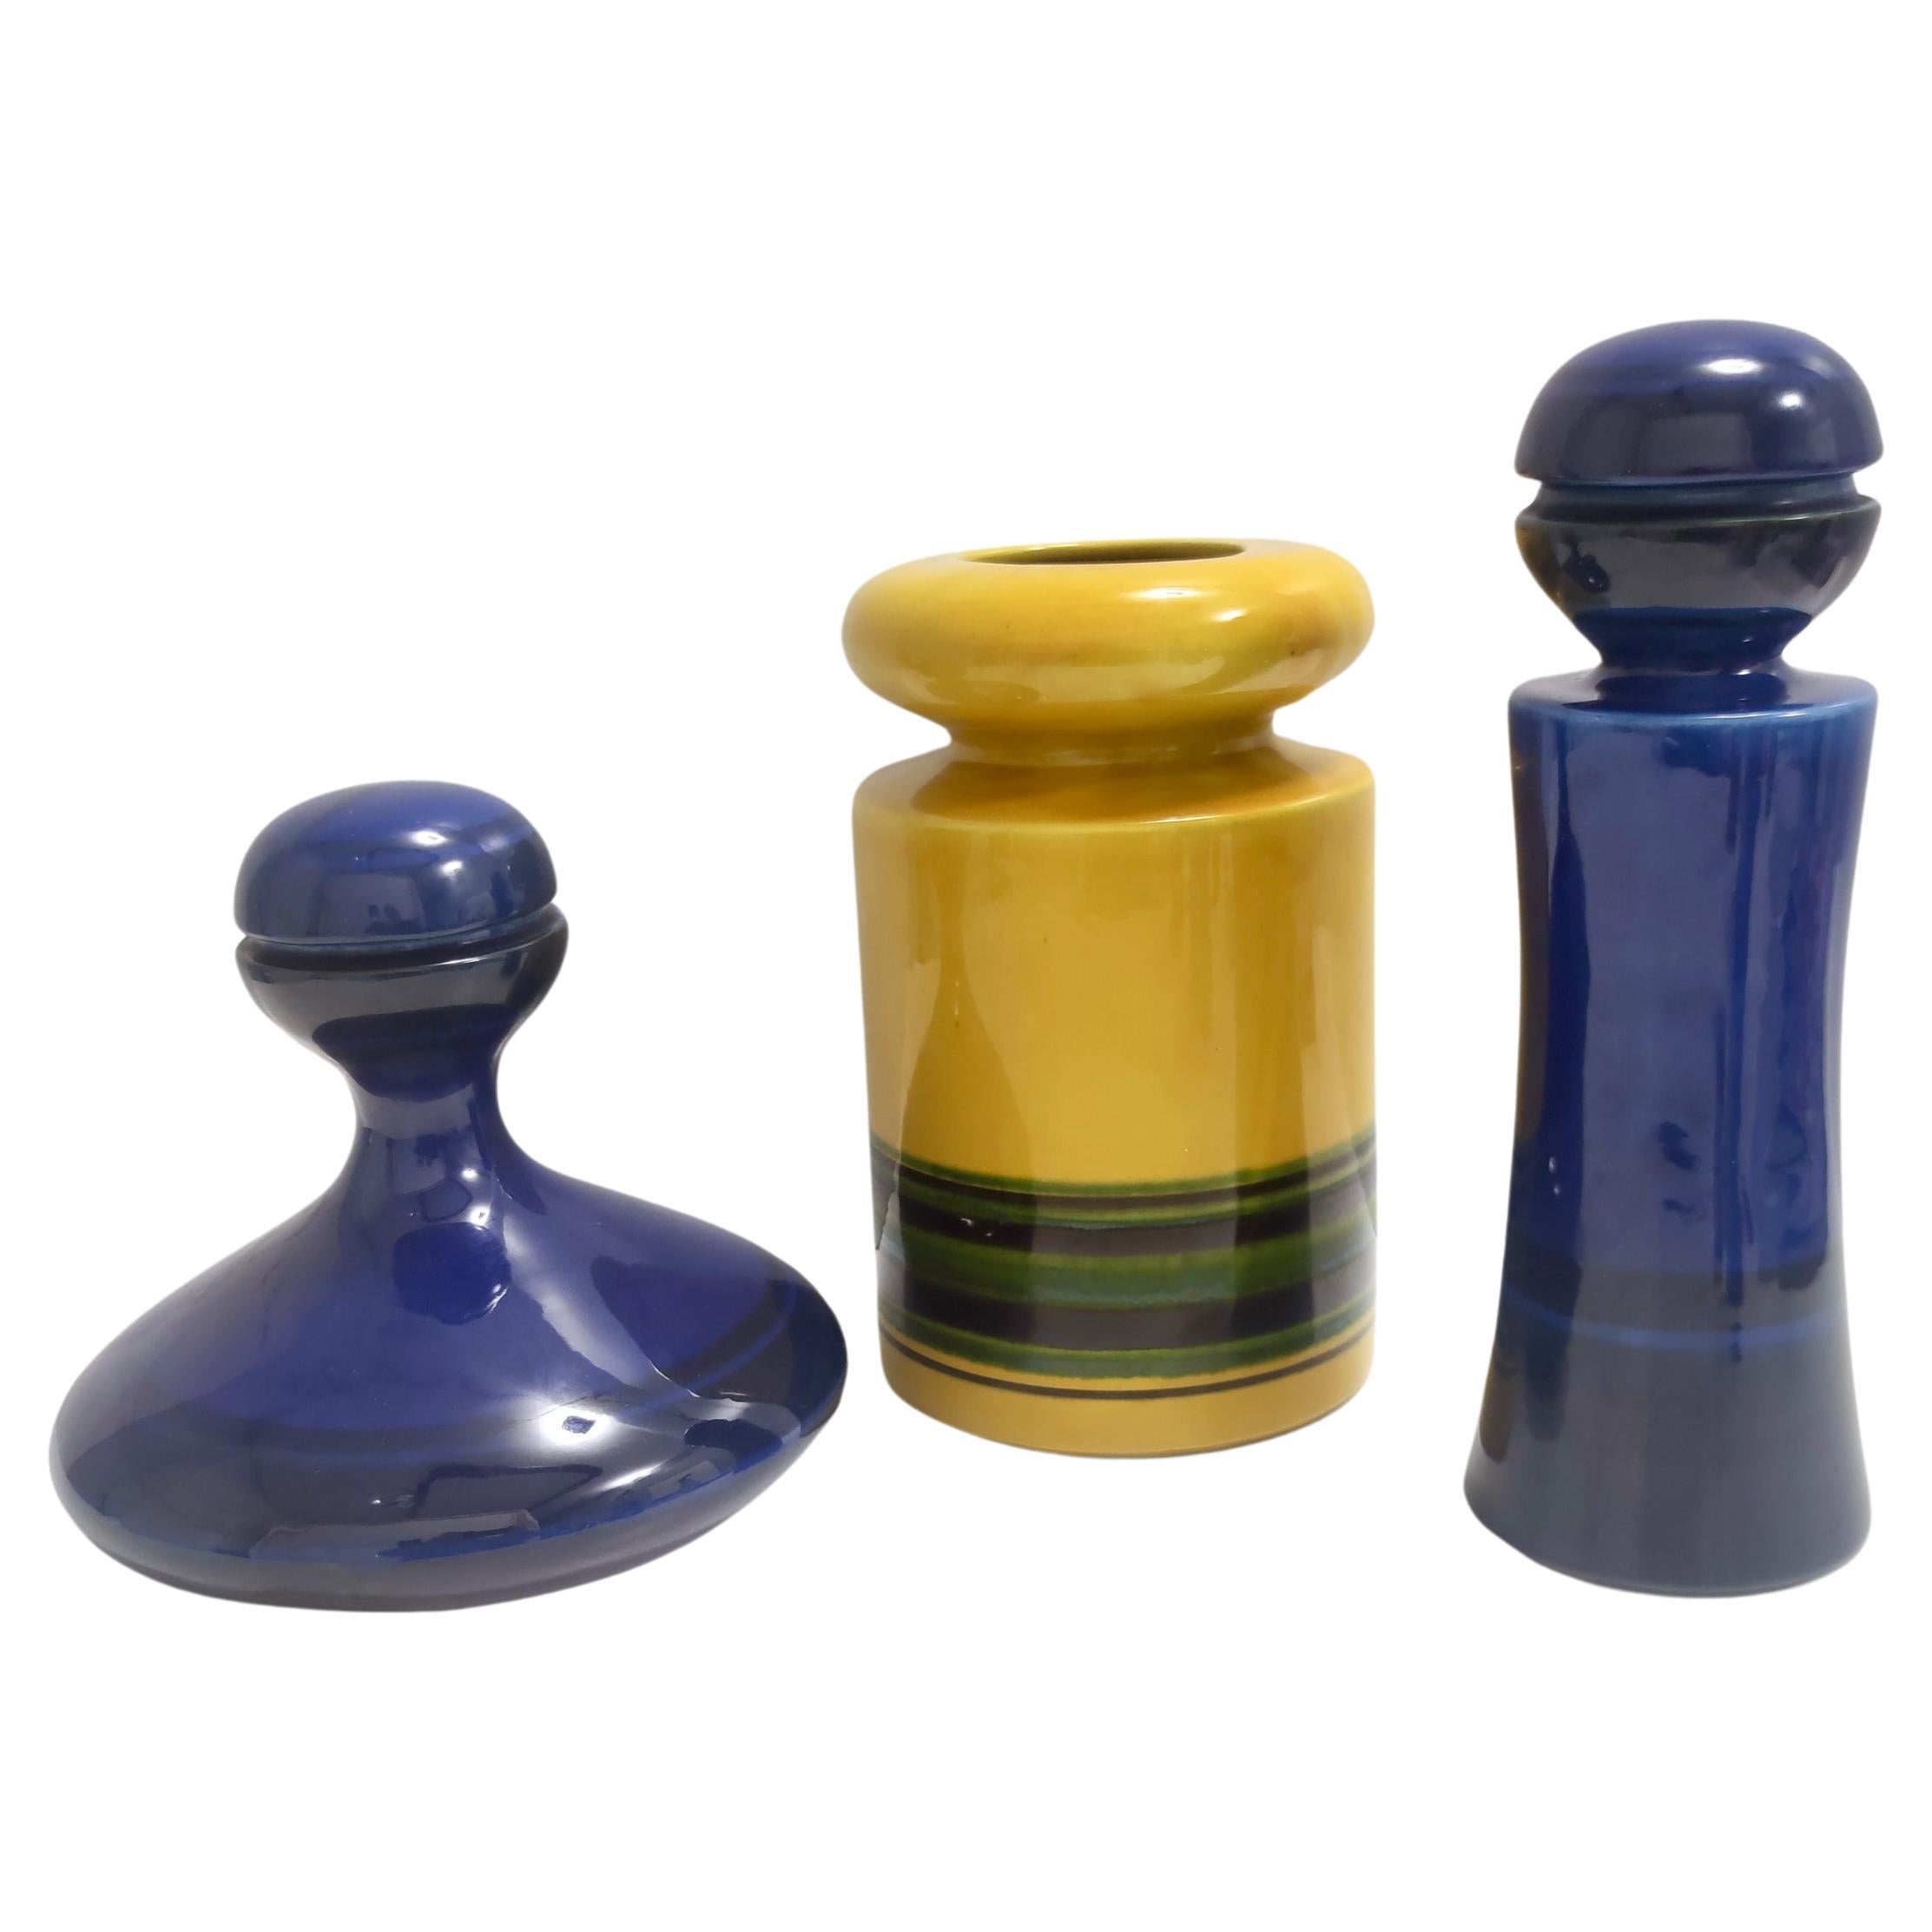 Ensemble de trois vases et bouteilles postmodernes émaillés bleus et jaunes par Parravicini